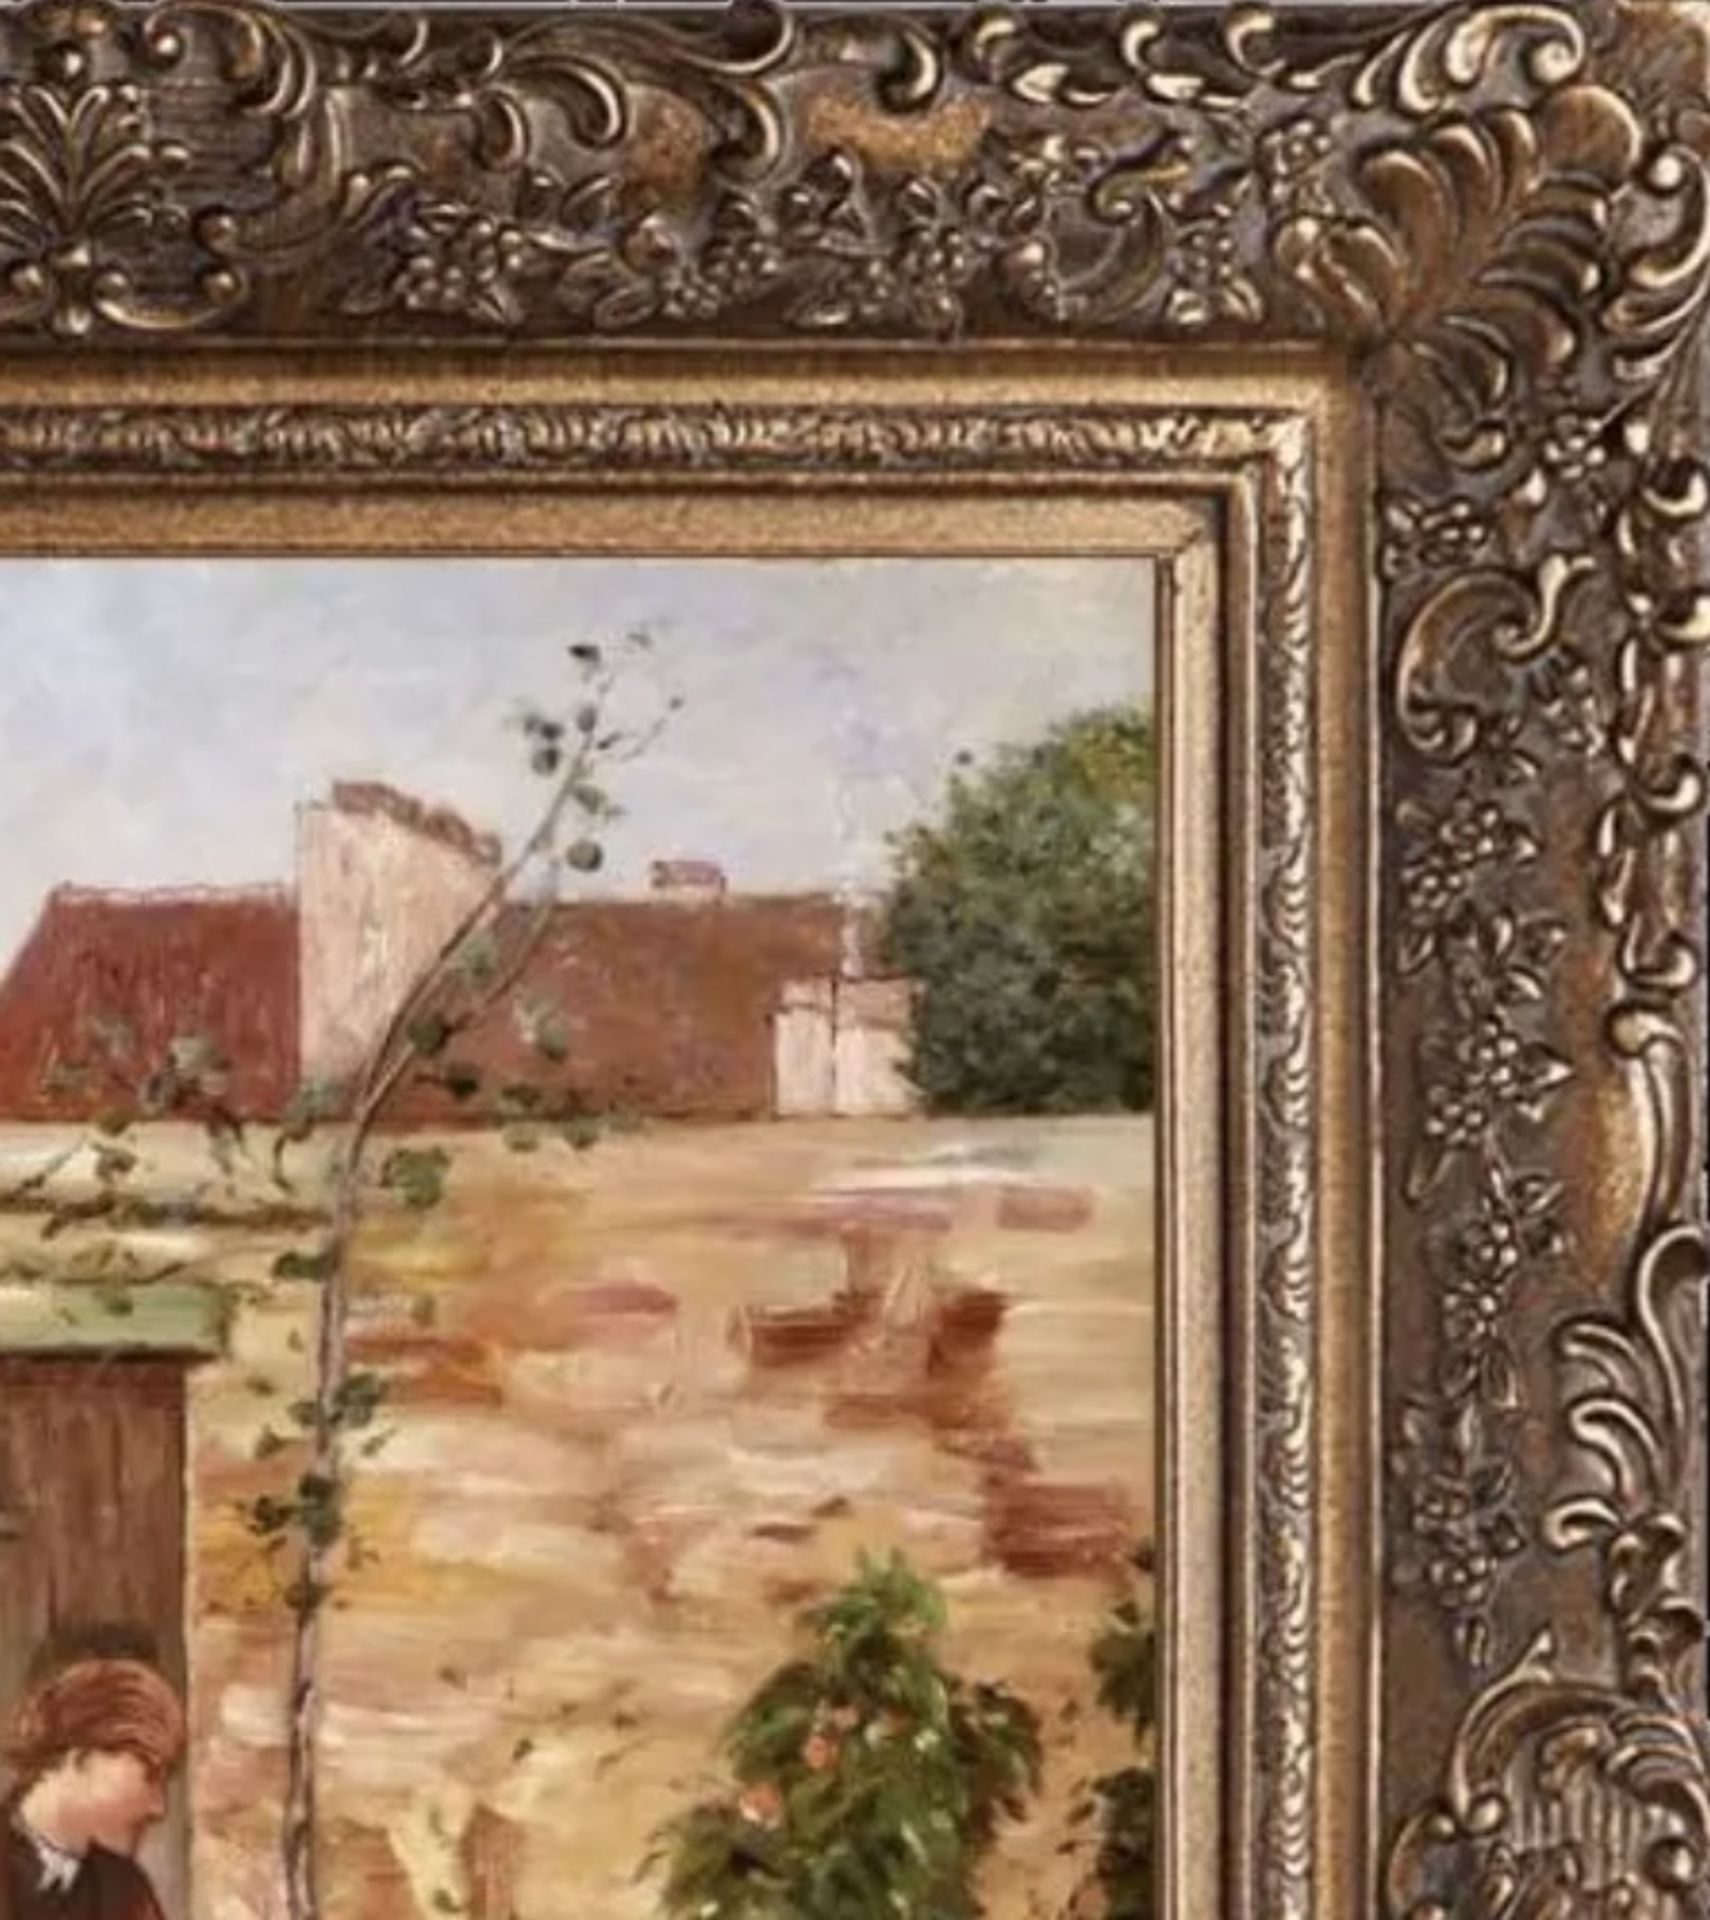 Childe Hassam "The Garden Door, 1888" Oil Painting, After - Image 3 of 5